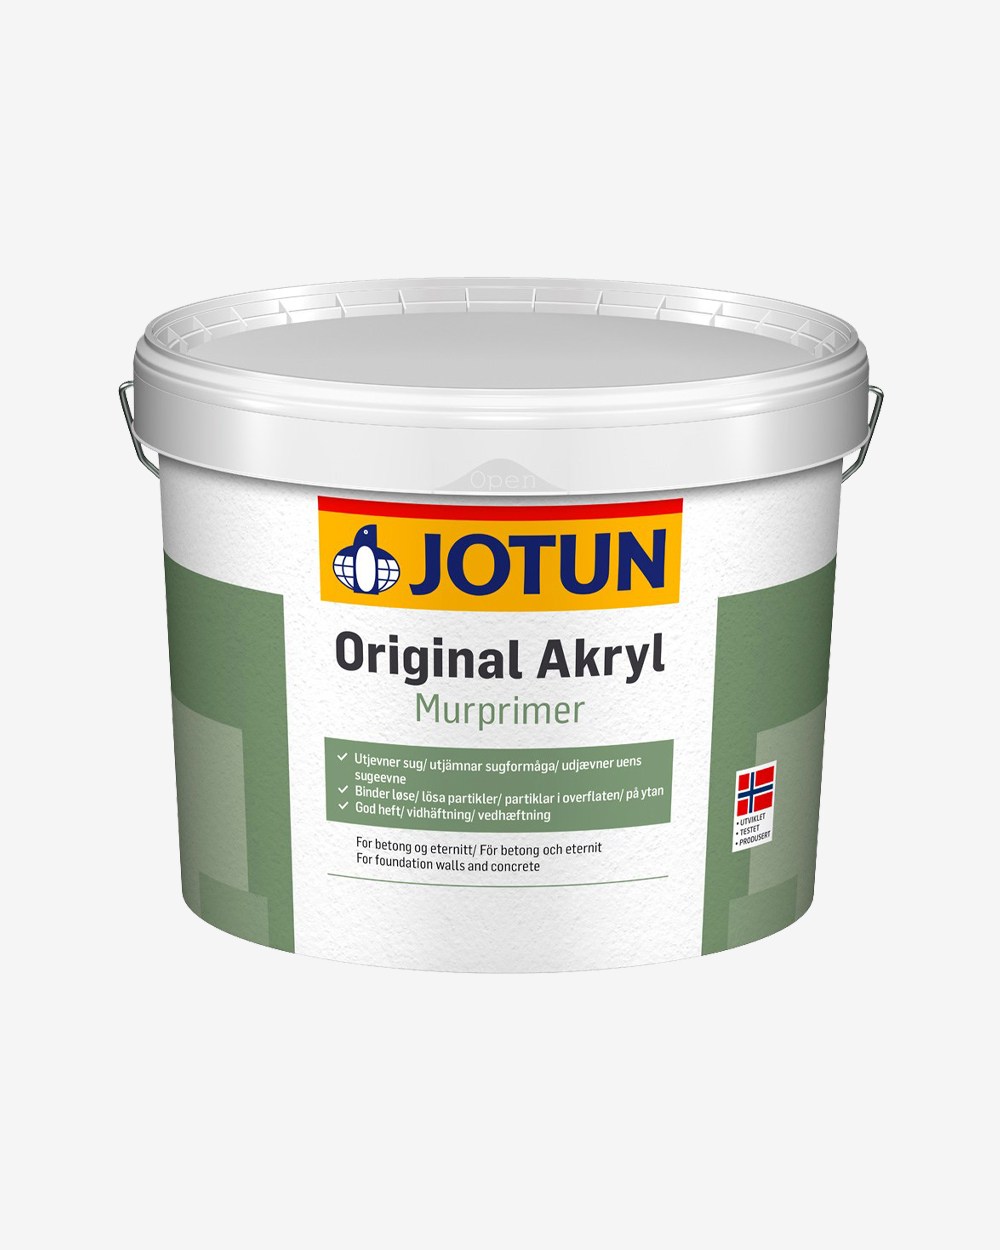 Jotun Original Akryl Murprimer - 3 L